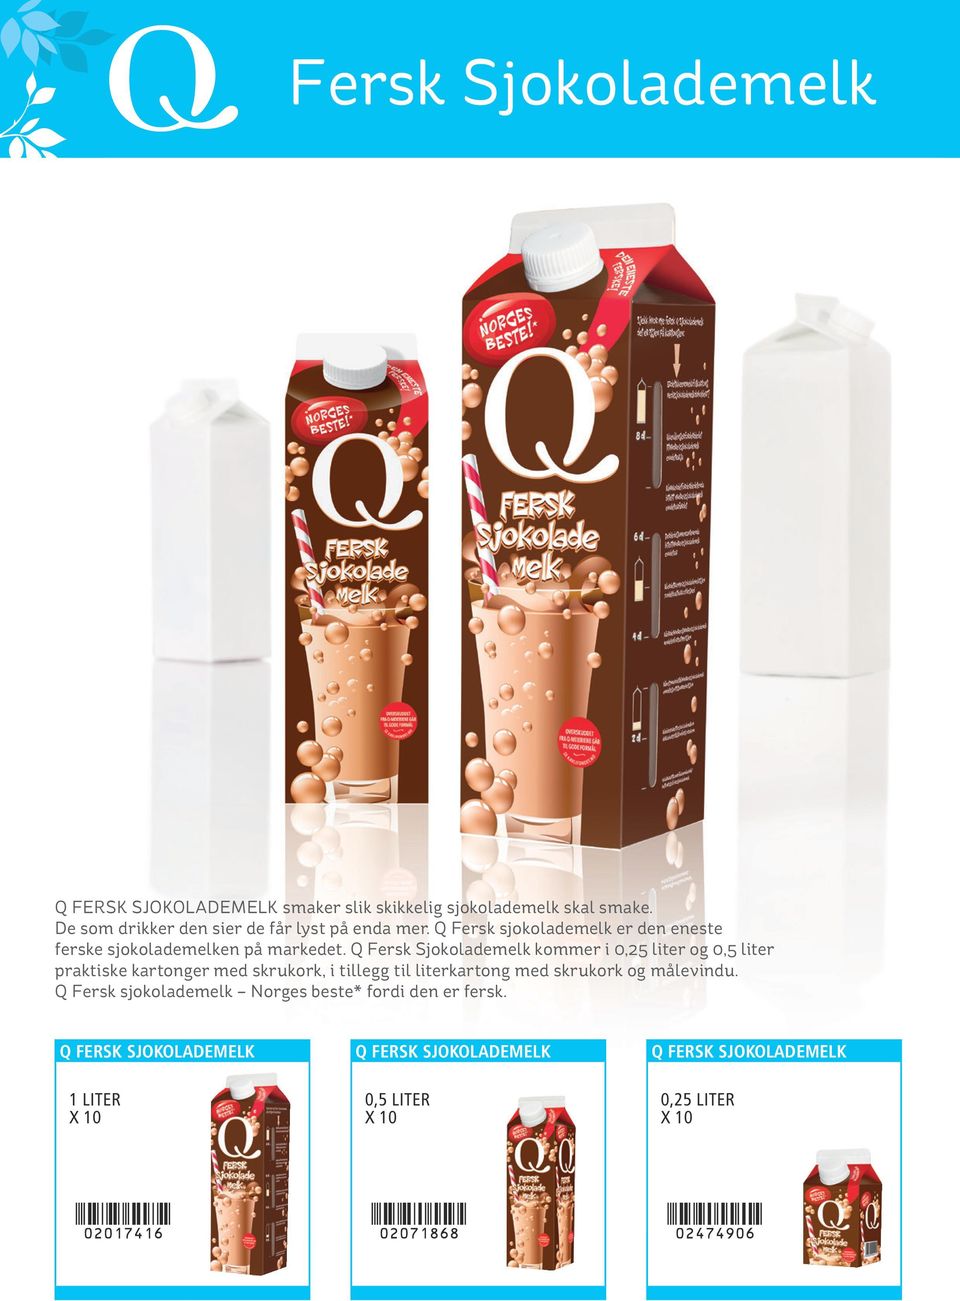 Q Fersk Sjokolademelk kommer i 0,25 liter og 0,5 liter praktiske kartonger med skrukork, i tillegg til literkartong med